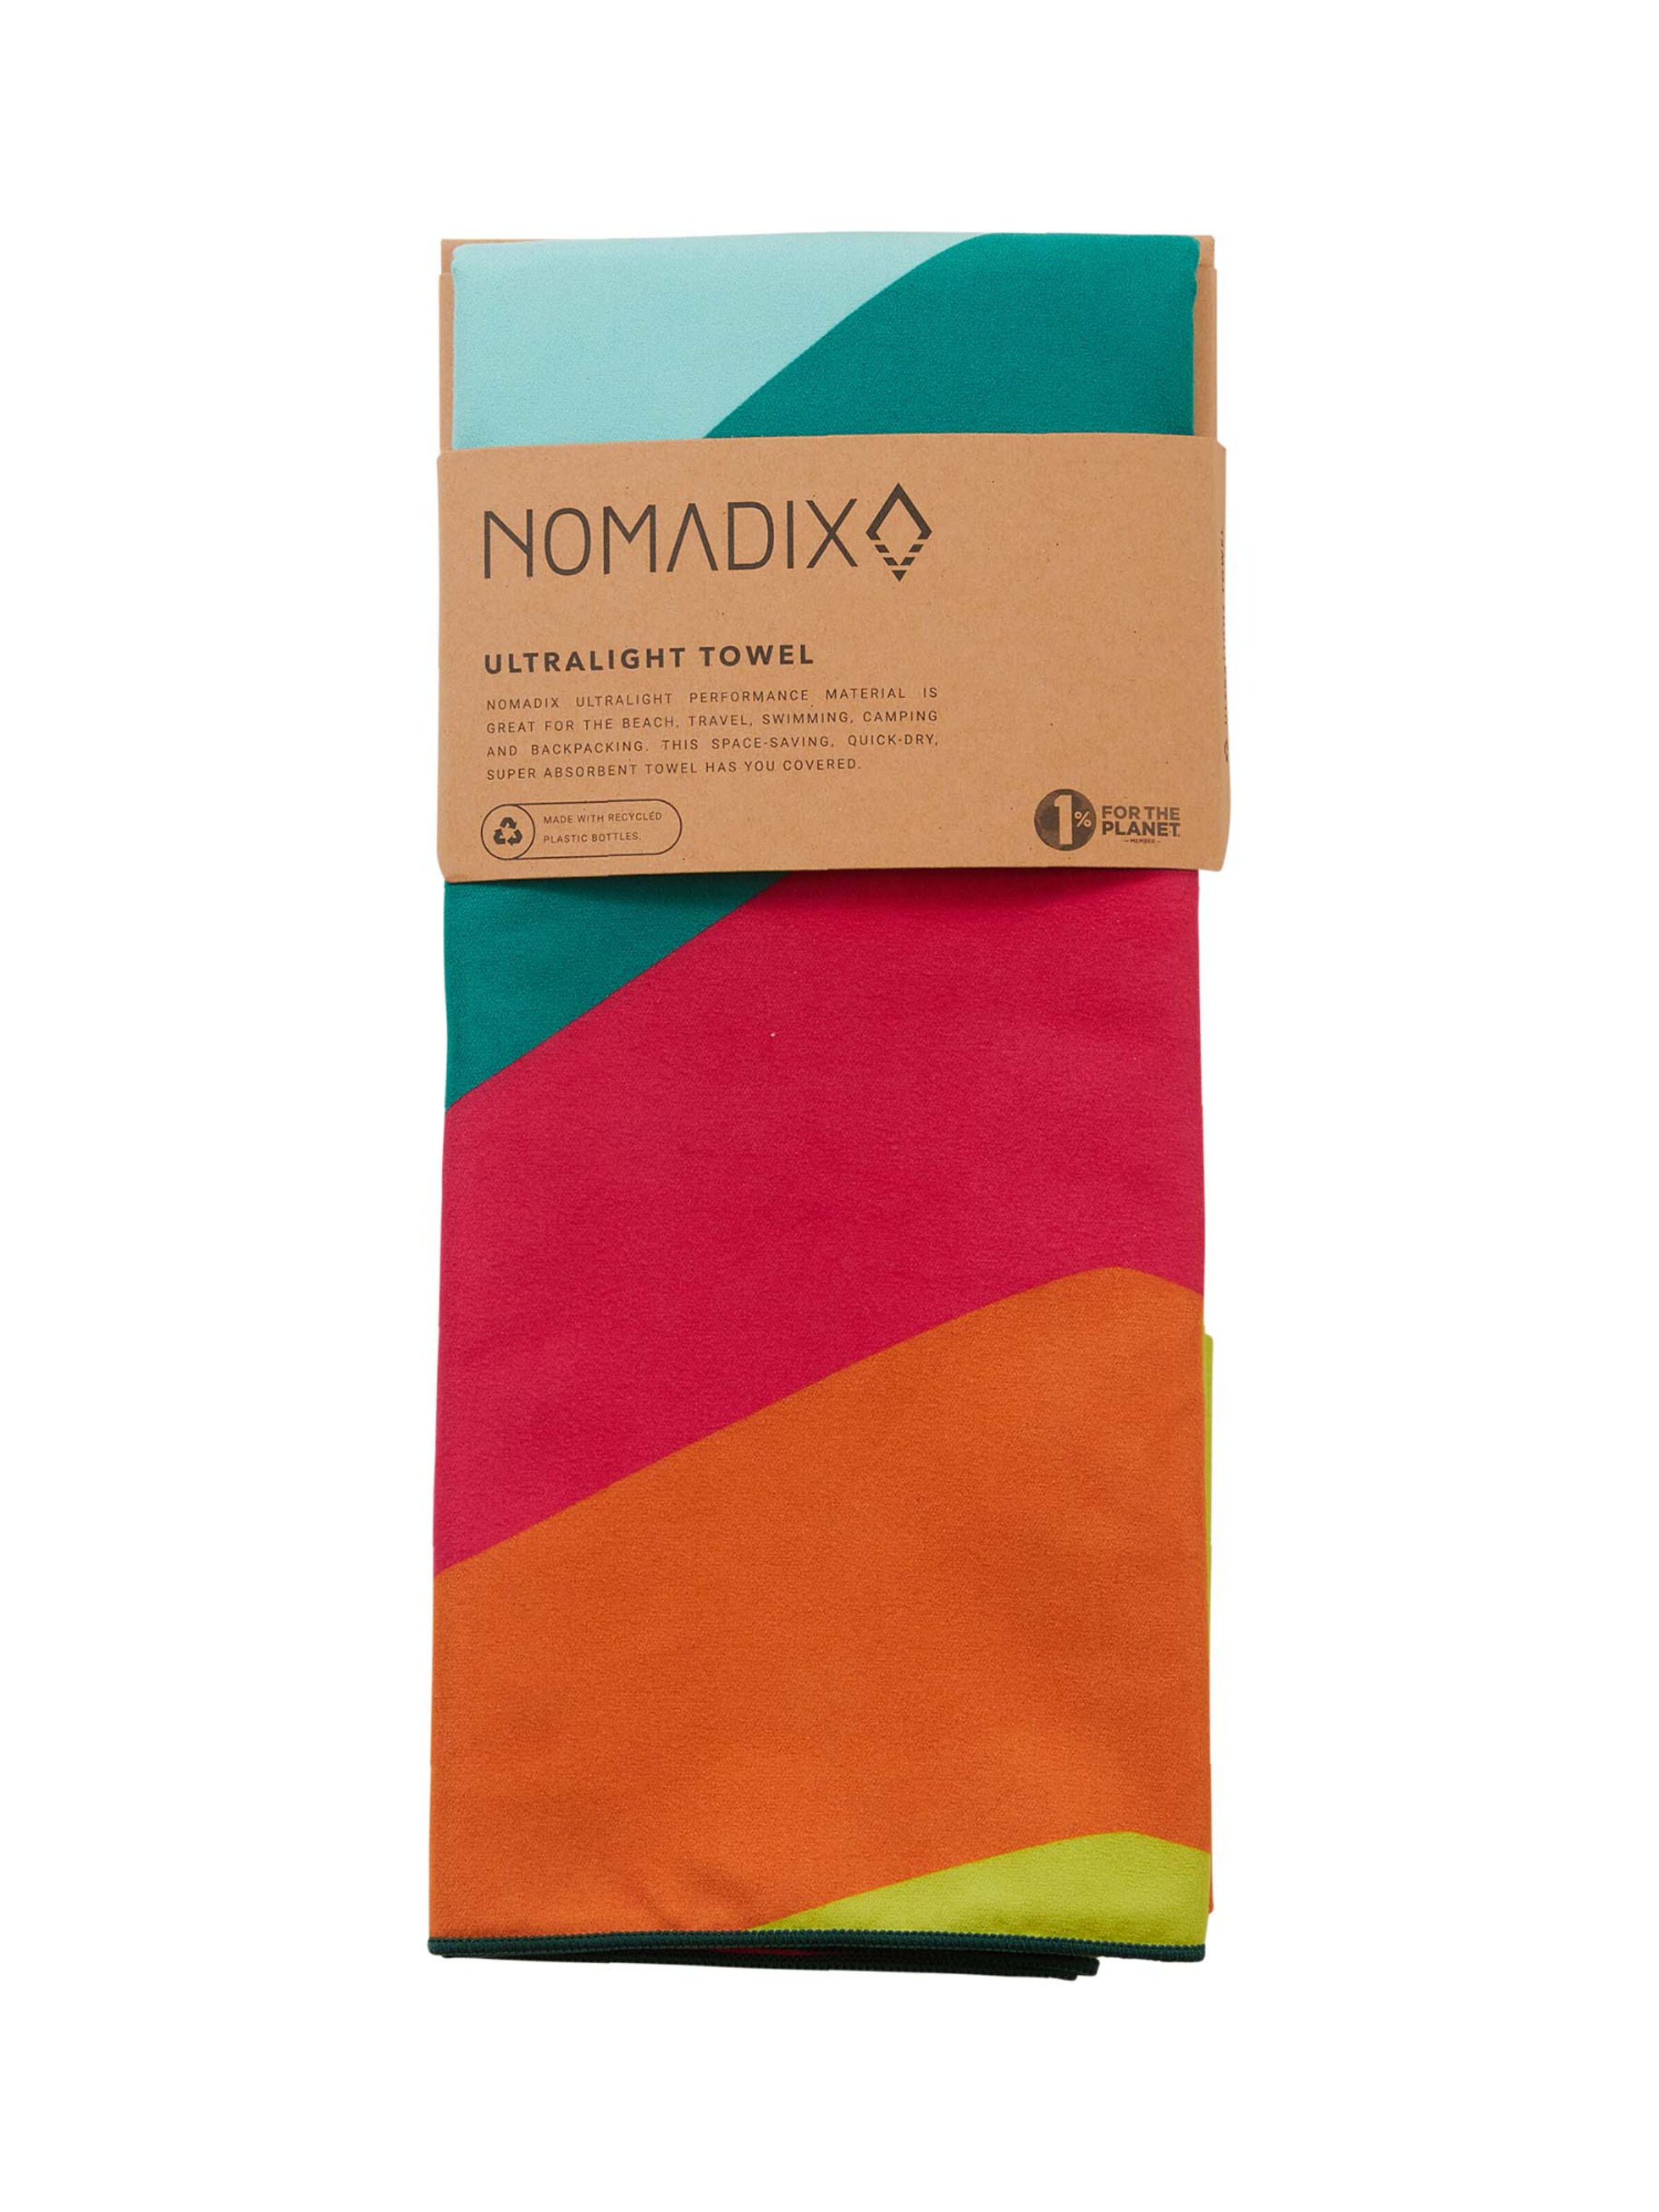 Frauen Wohn-Accessoires Nomadix Handtuch in Mischfarben - HO91814